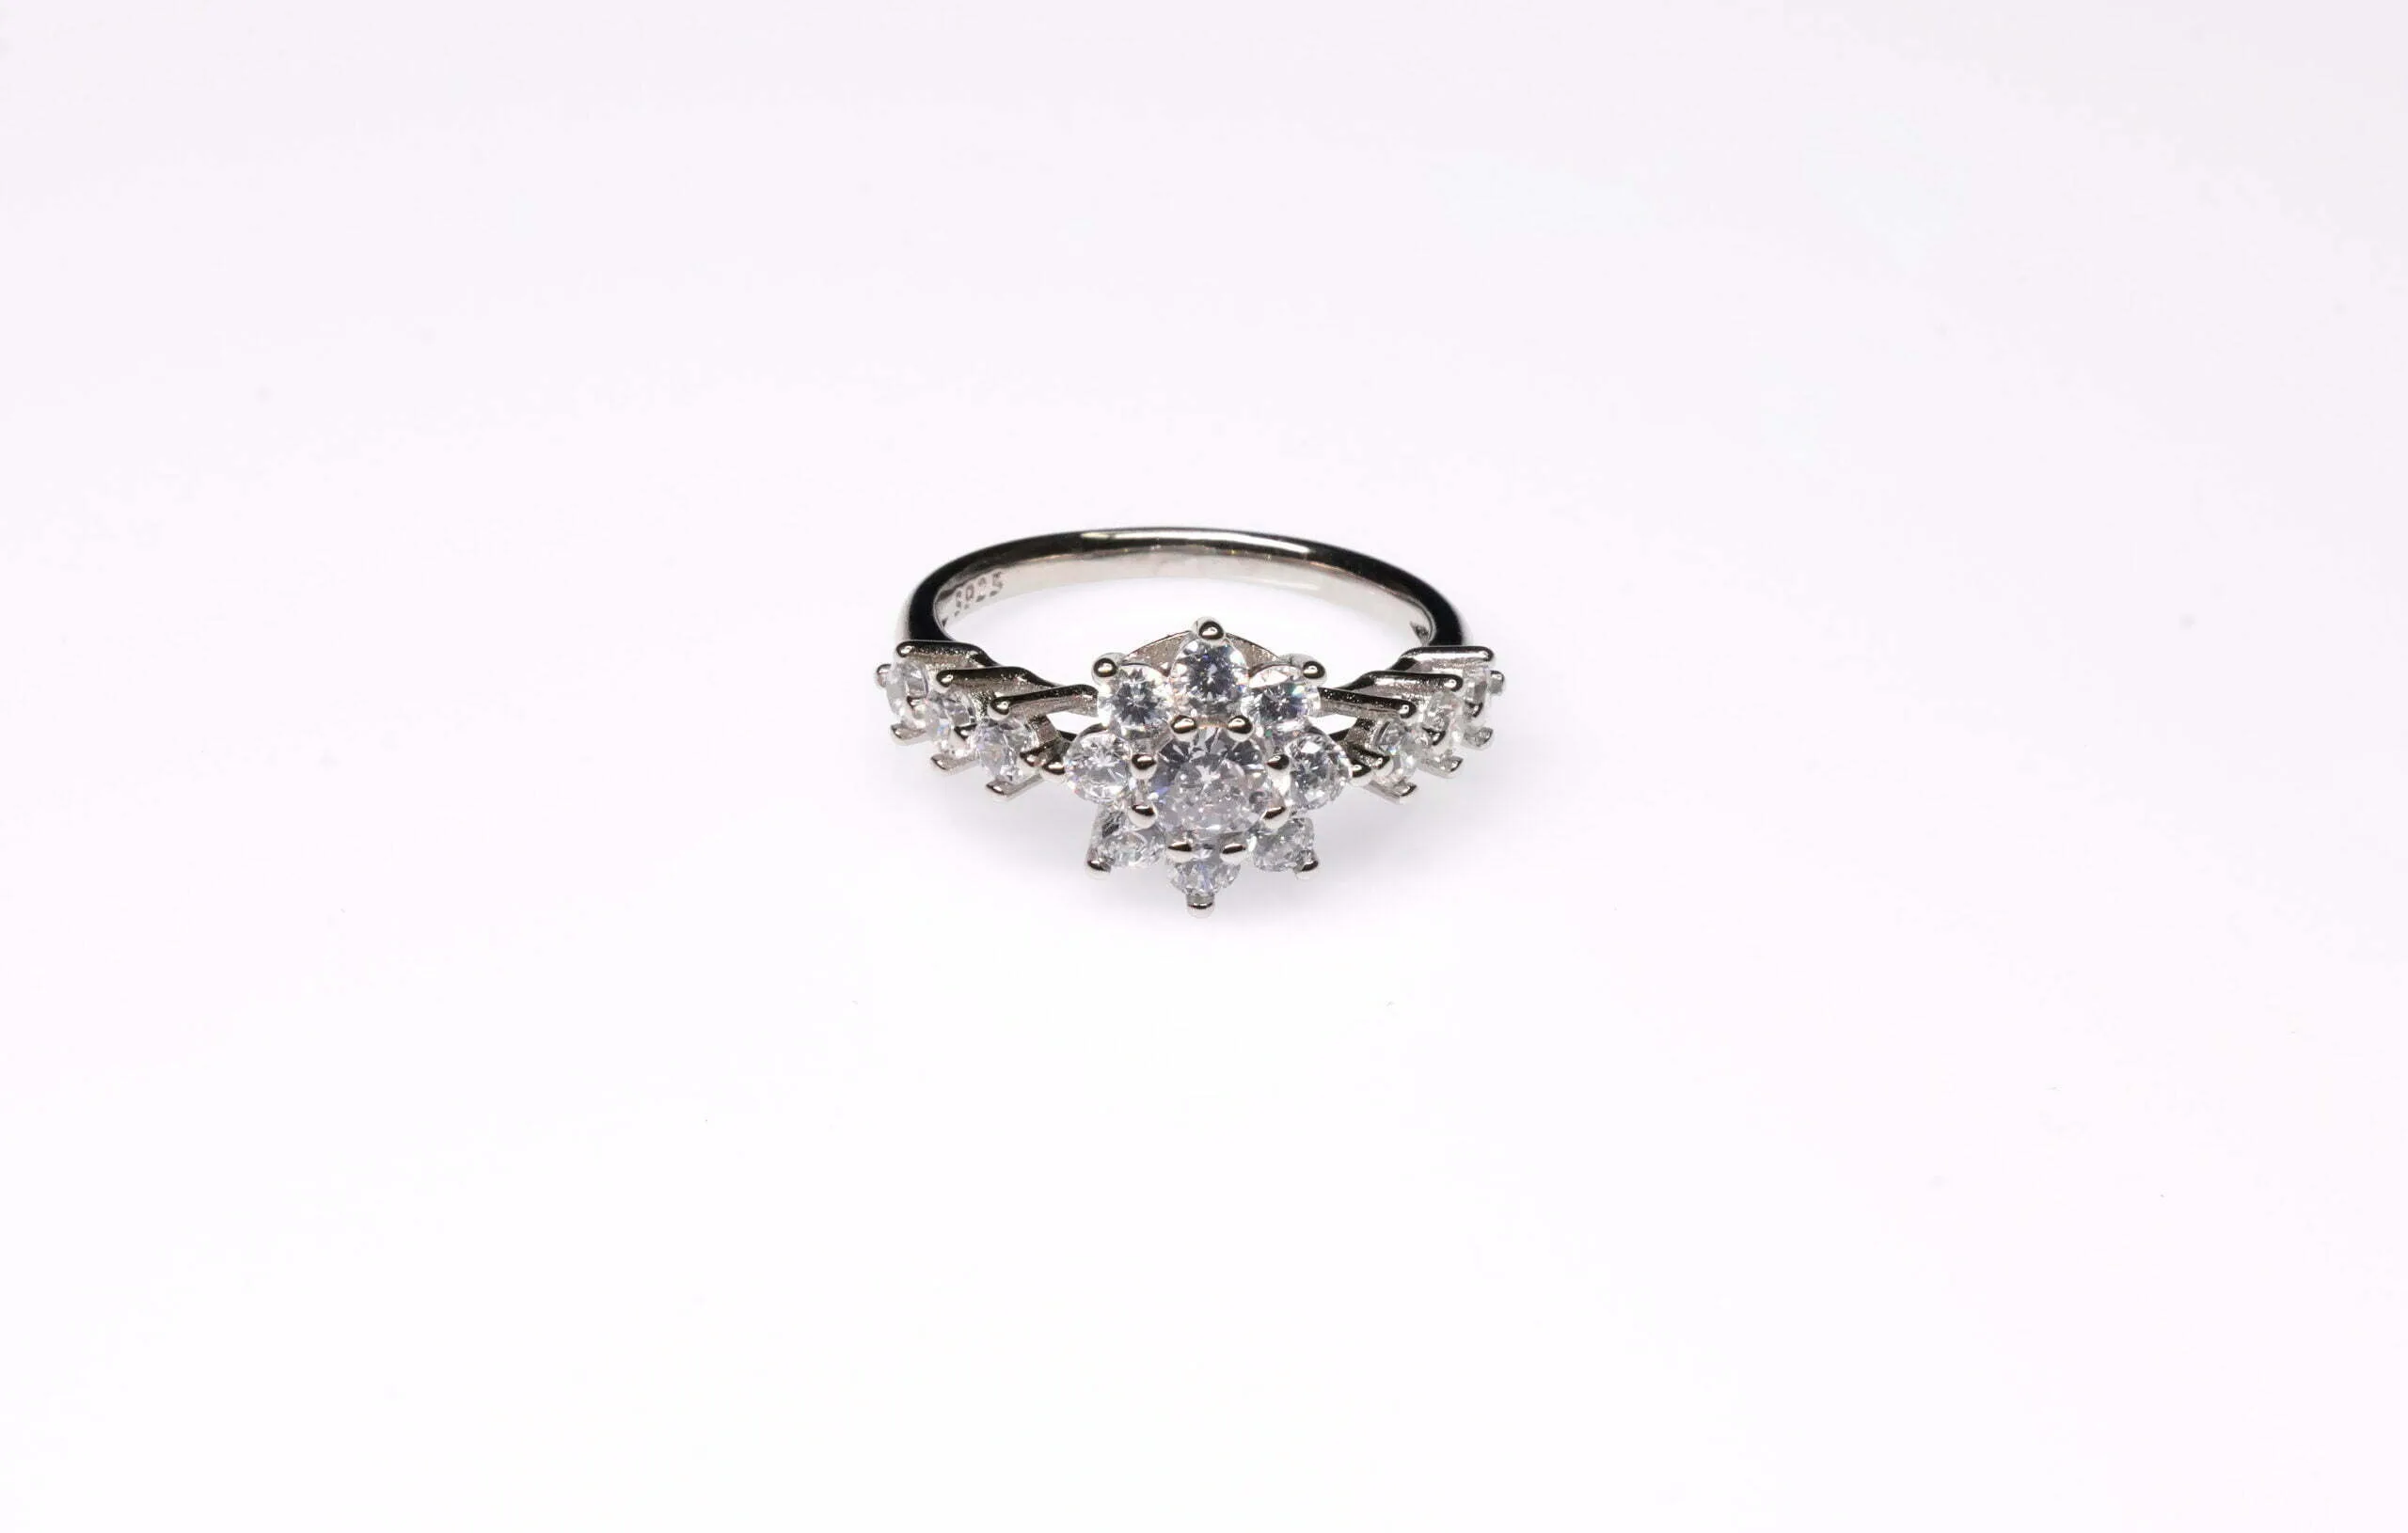 AR-LRZ-0001 diamond flower ring gold 3D model 3D printable | CGTrader